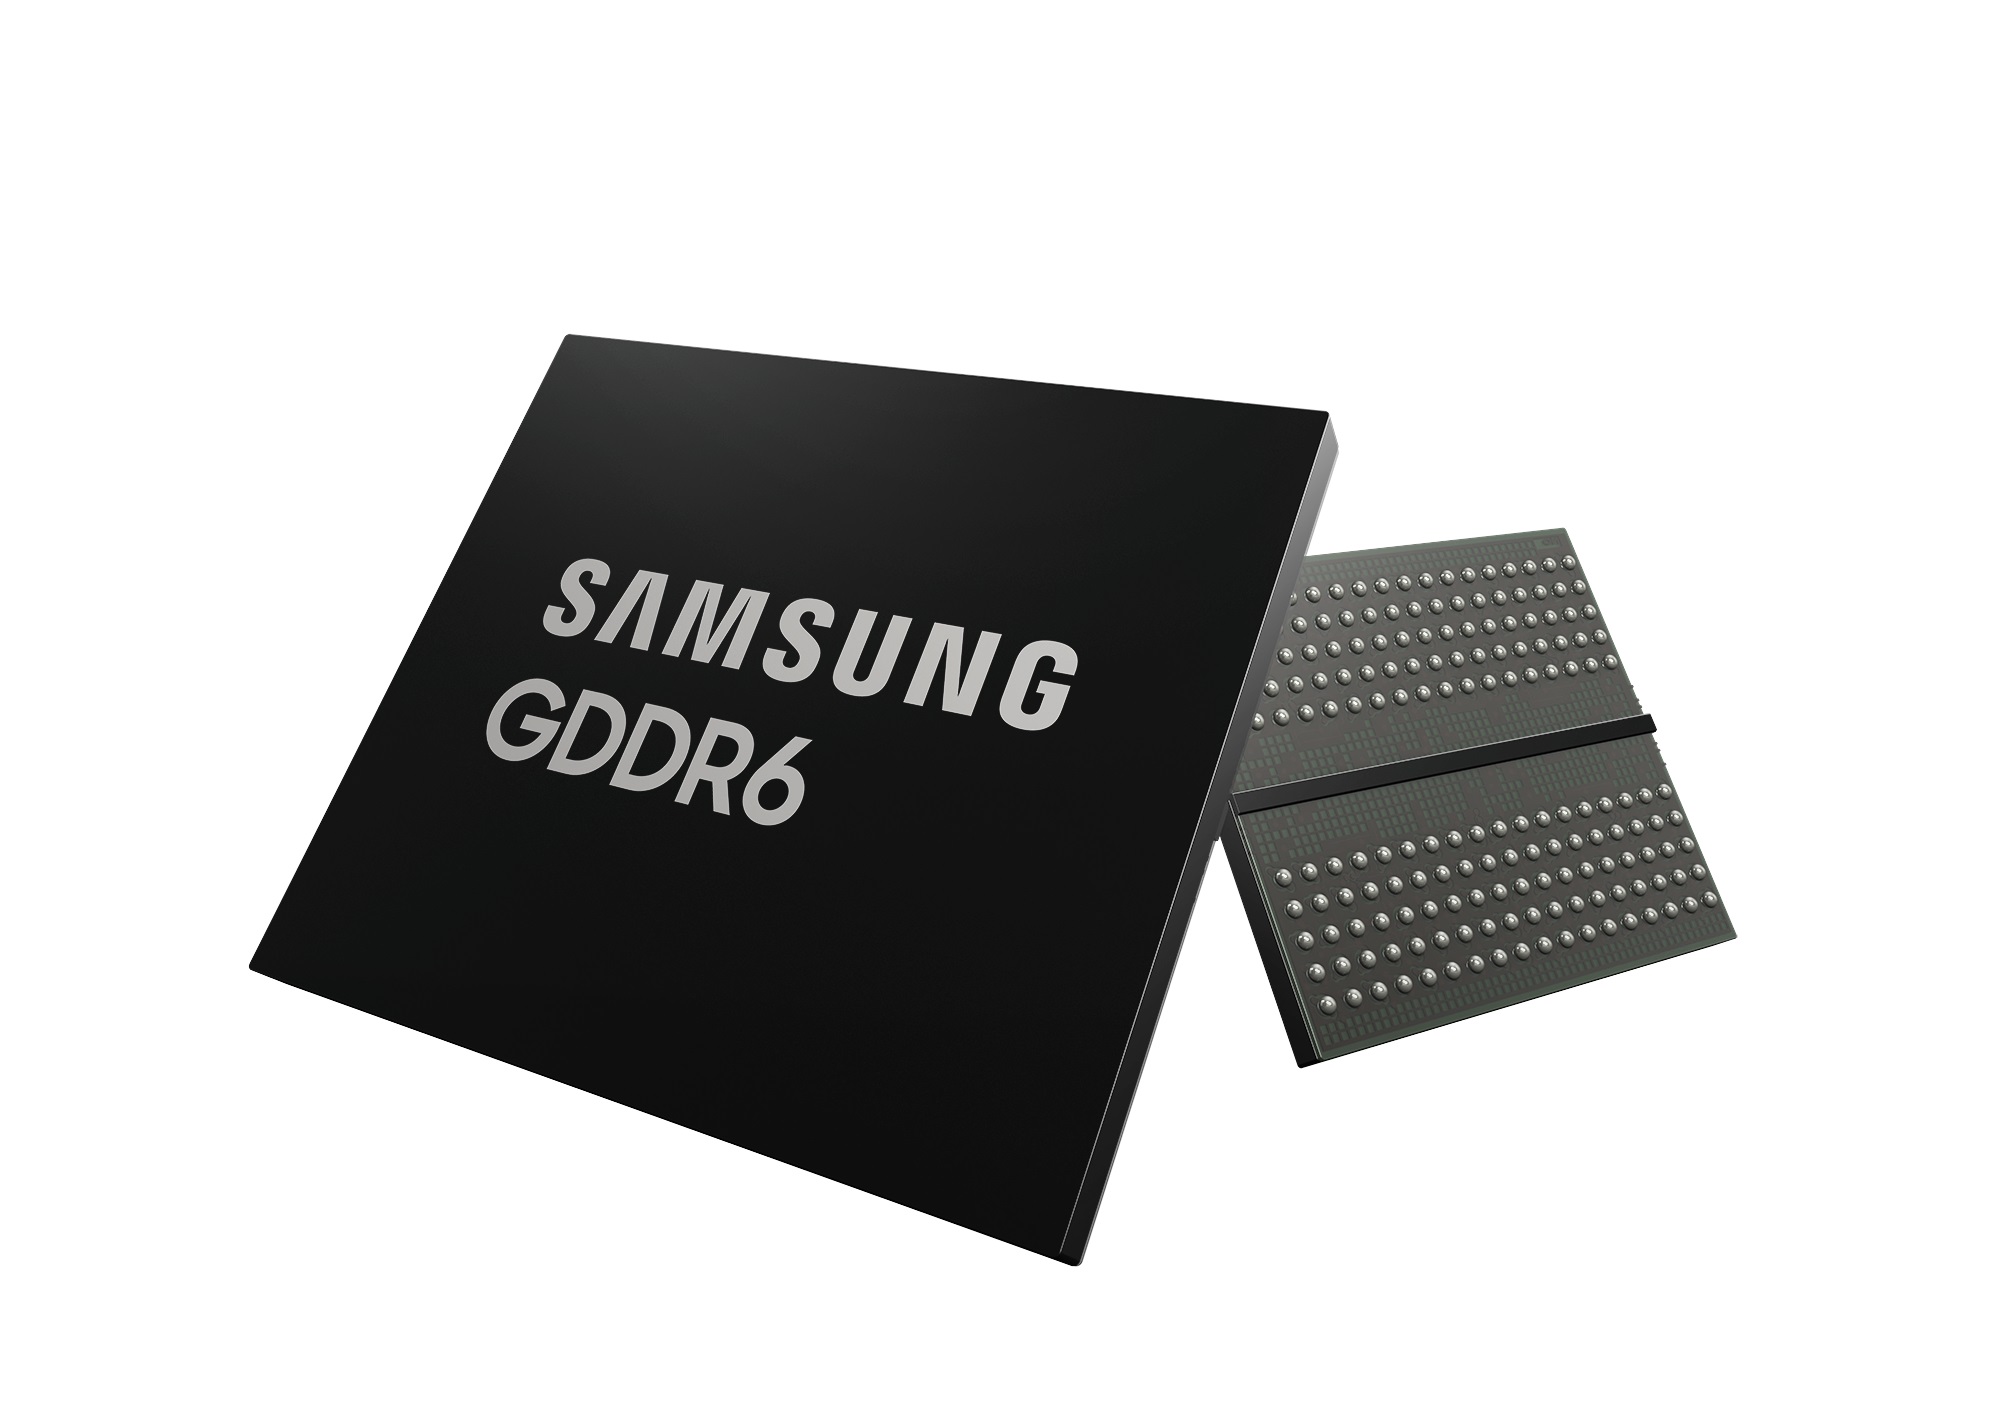 Samsung anuncia primeira memória GDDR6 que transmite dados a 24 Gb/s